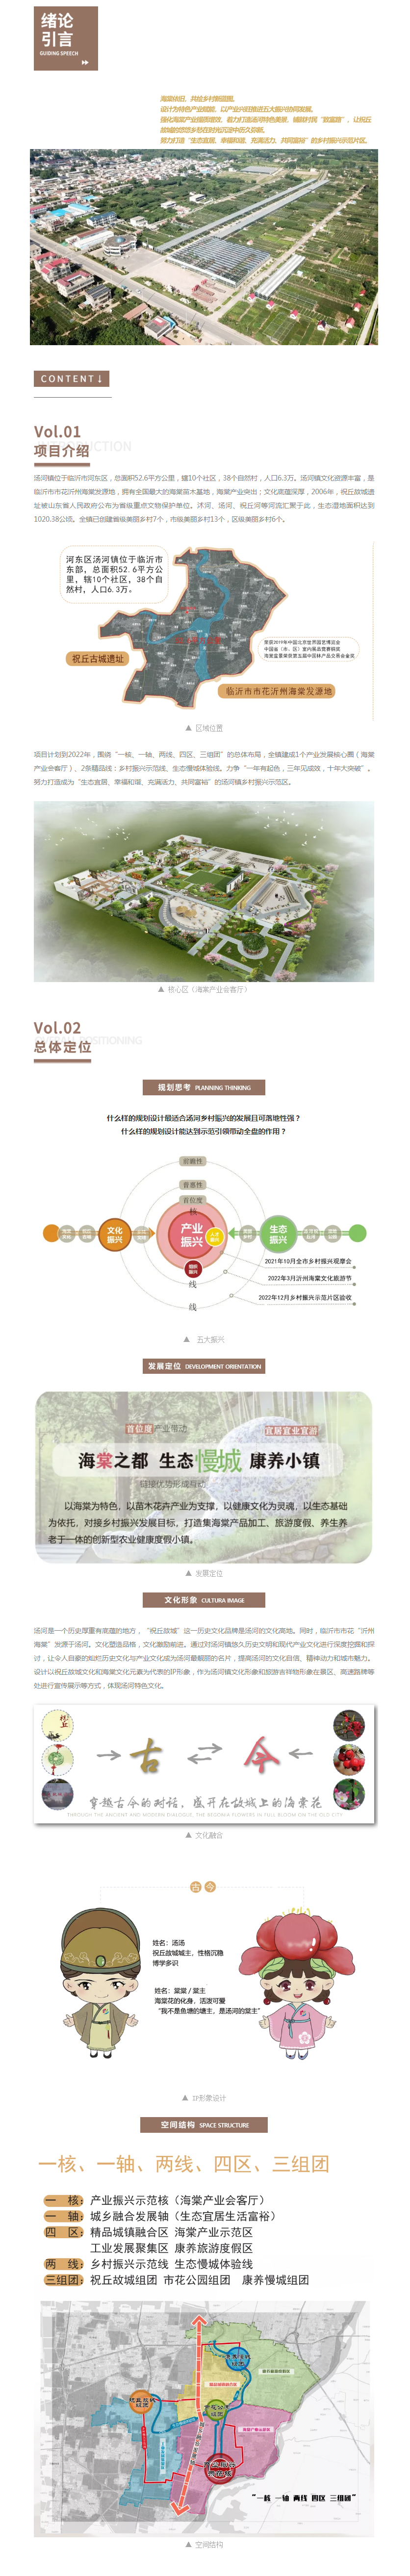 汤河镇乡村振兴示范片区规划设计11.jpg